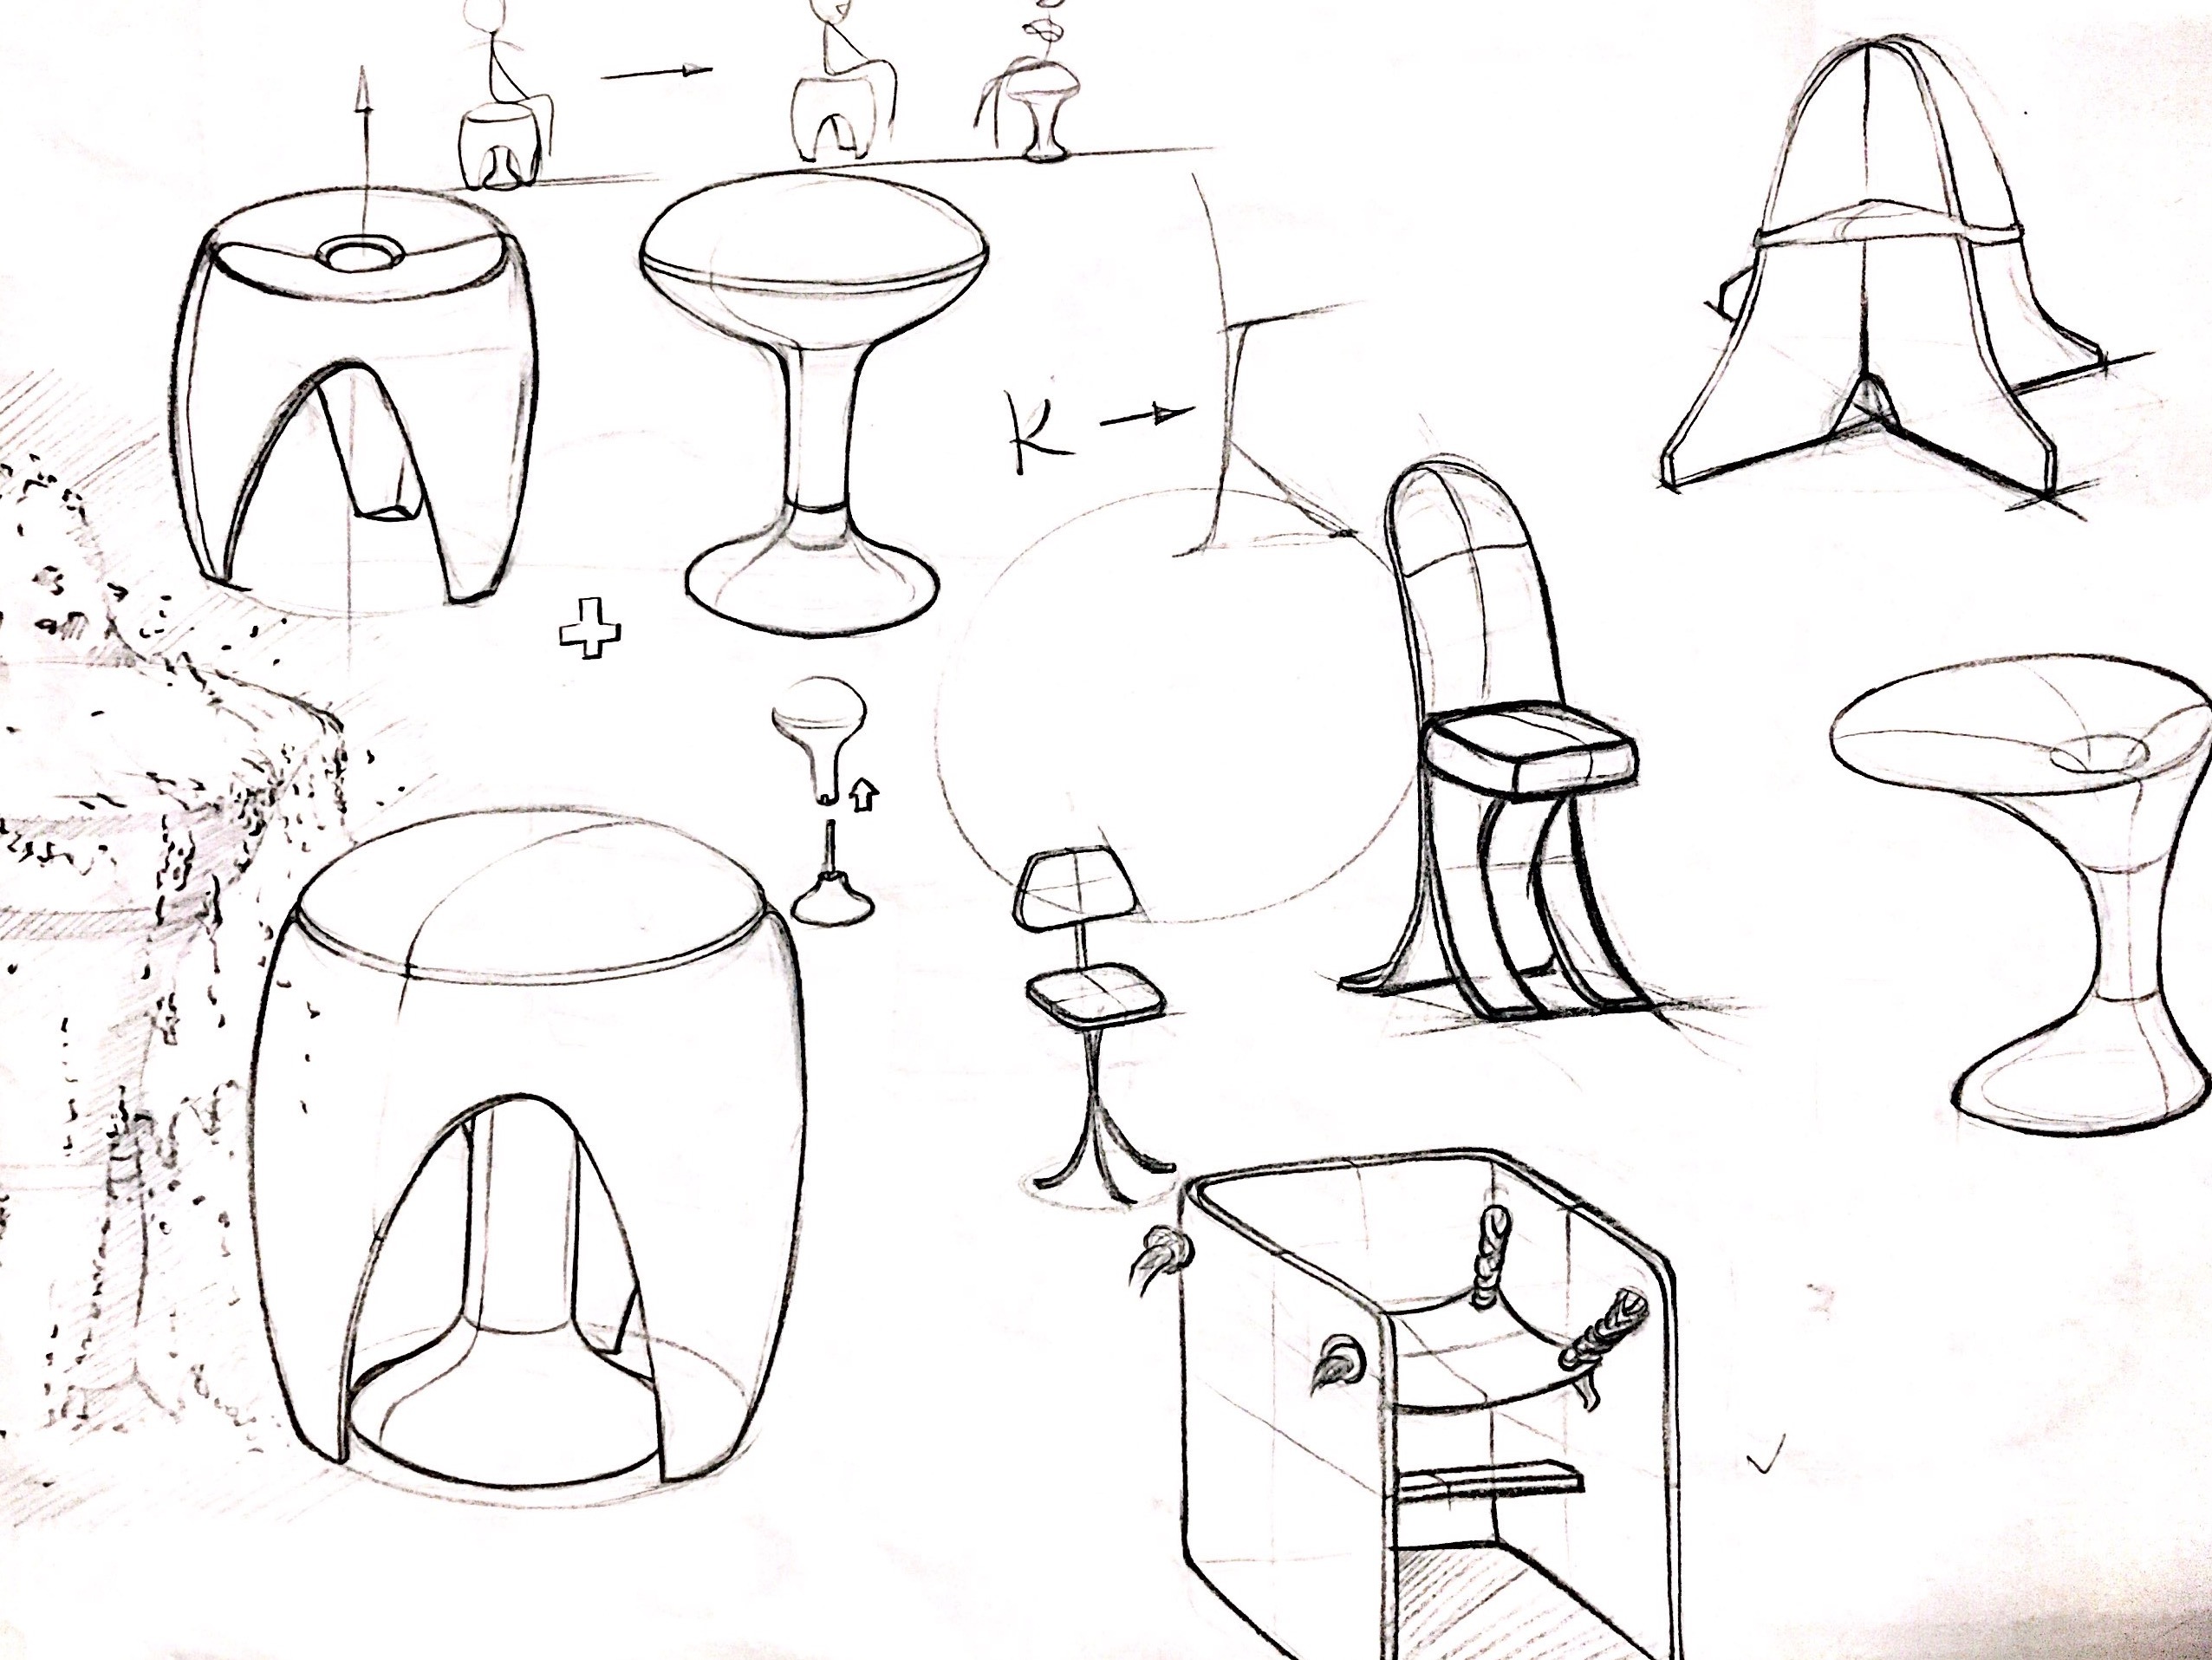 椅子设计手绘效果图-图库-五毛网